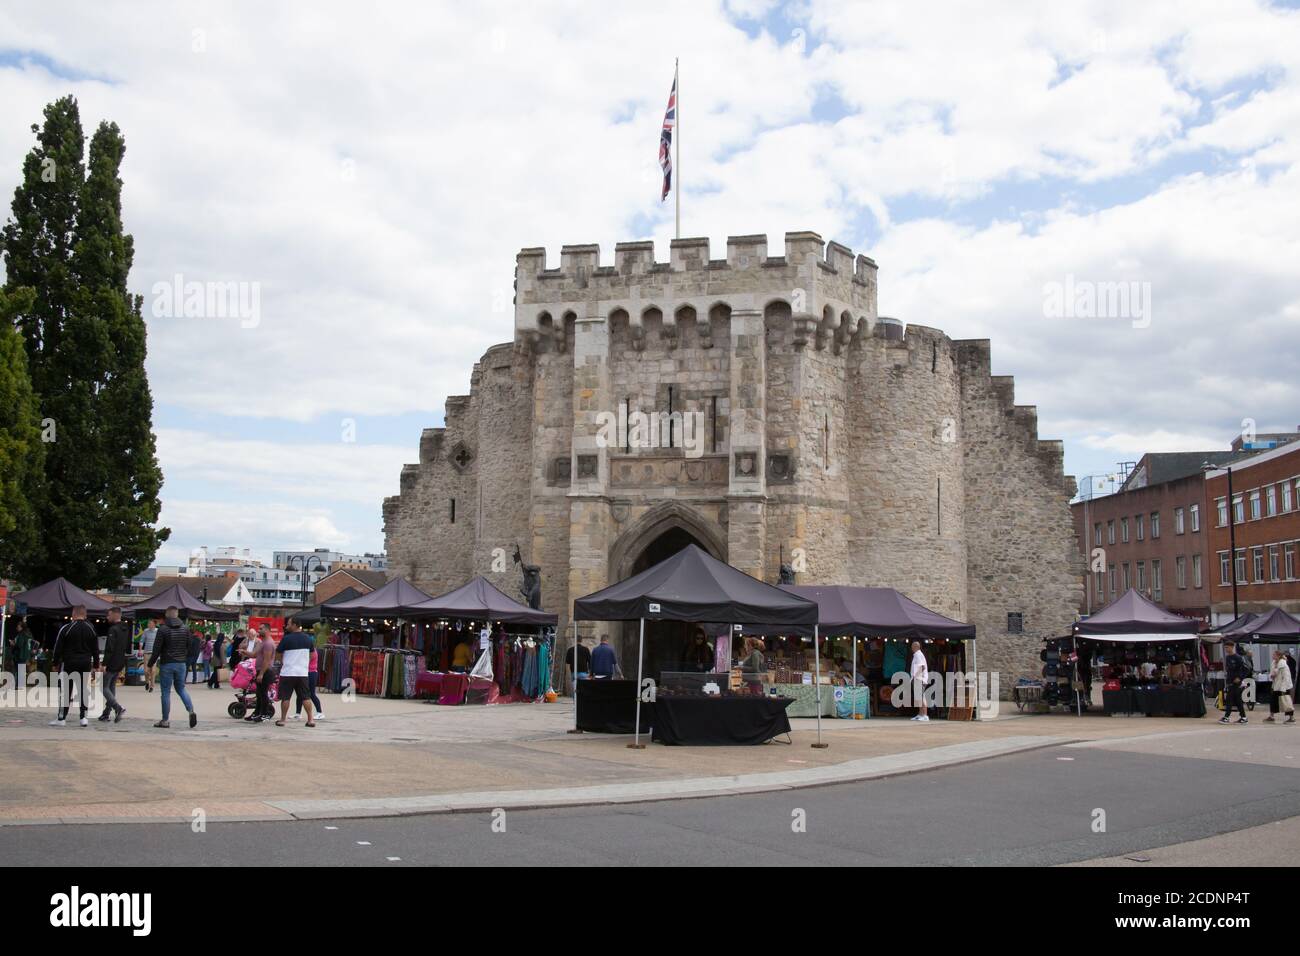 Bargate à Southampton avec des stands de marché et des acheteurs au Royaume-Uni, pris le 10 juillet 2020 Banque D'Images